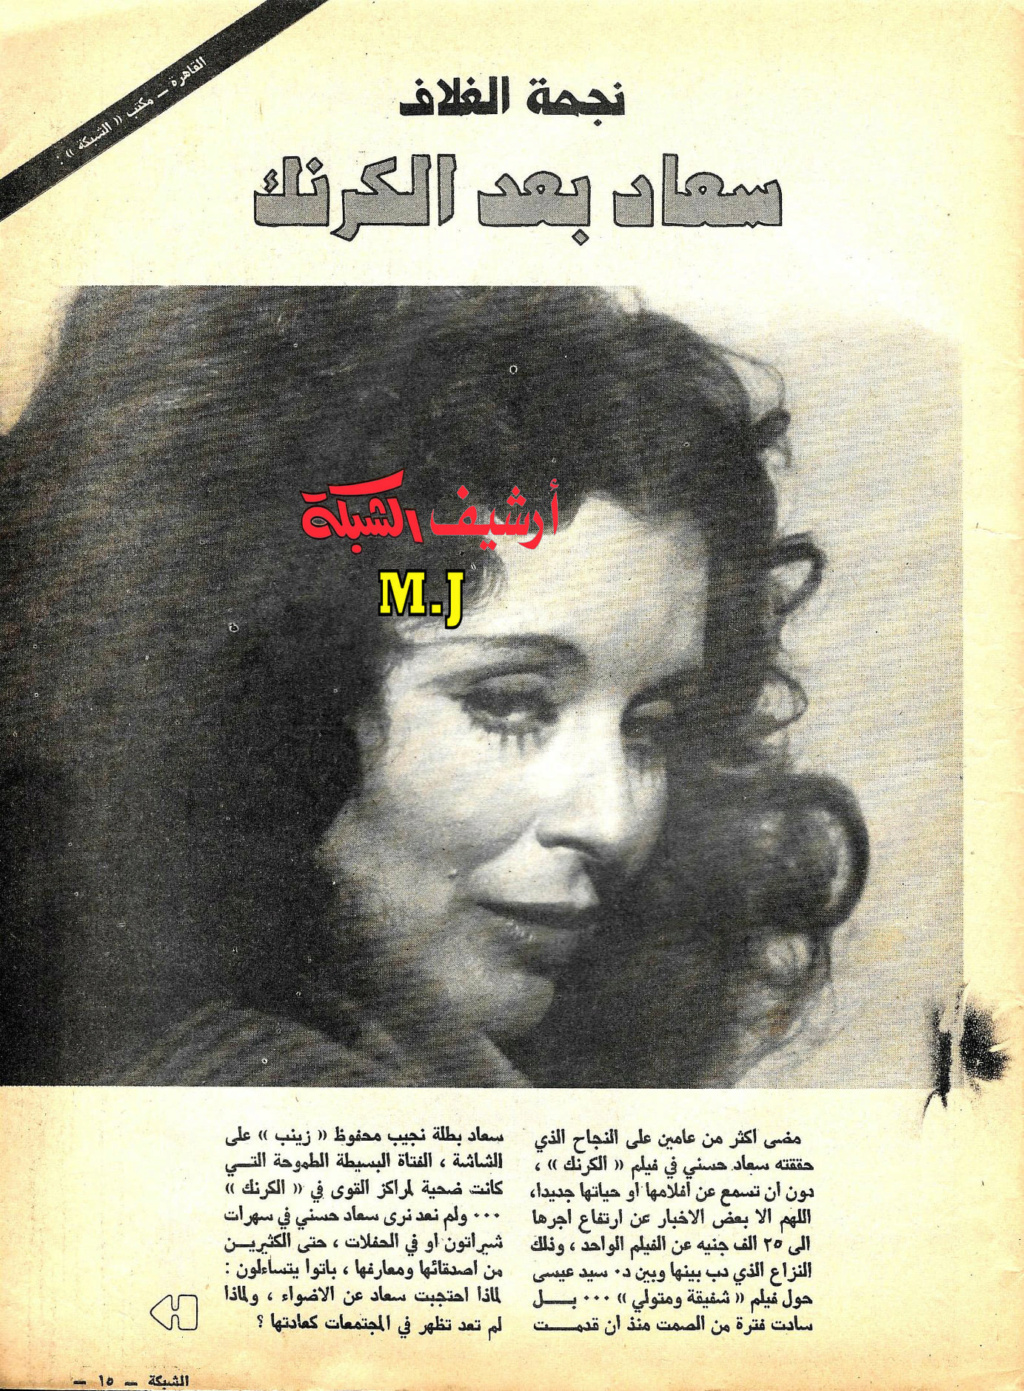 1977 - حوار صحفي : سعاد حسني بعد الكرنك 1977 م 1439